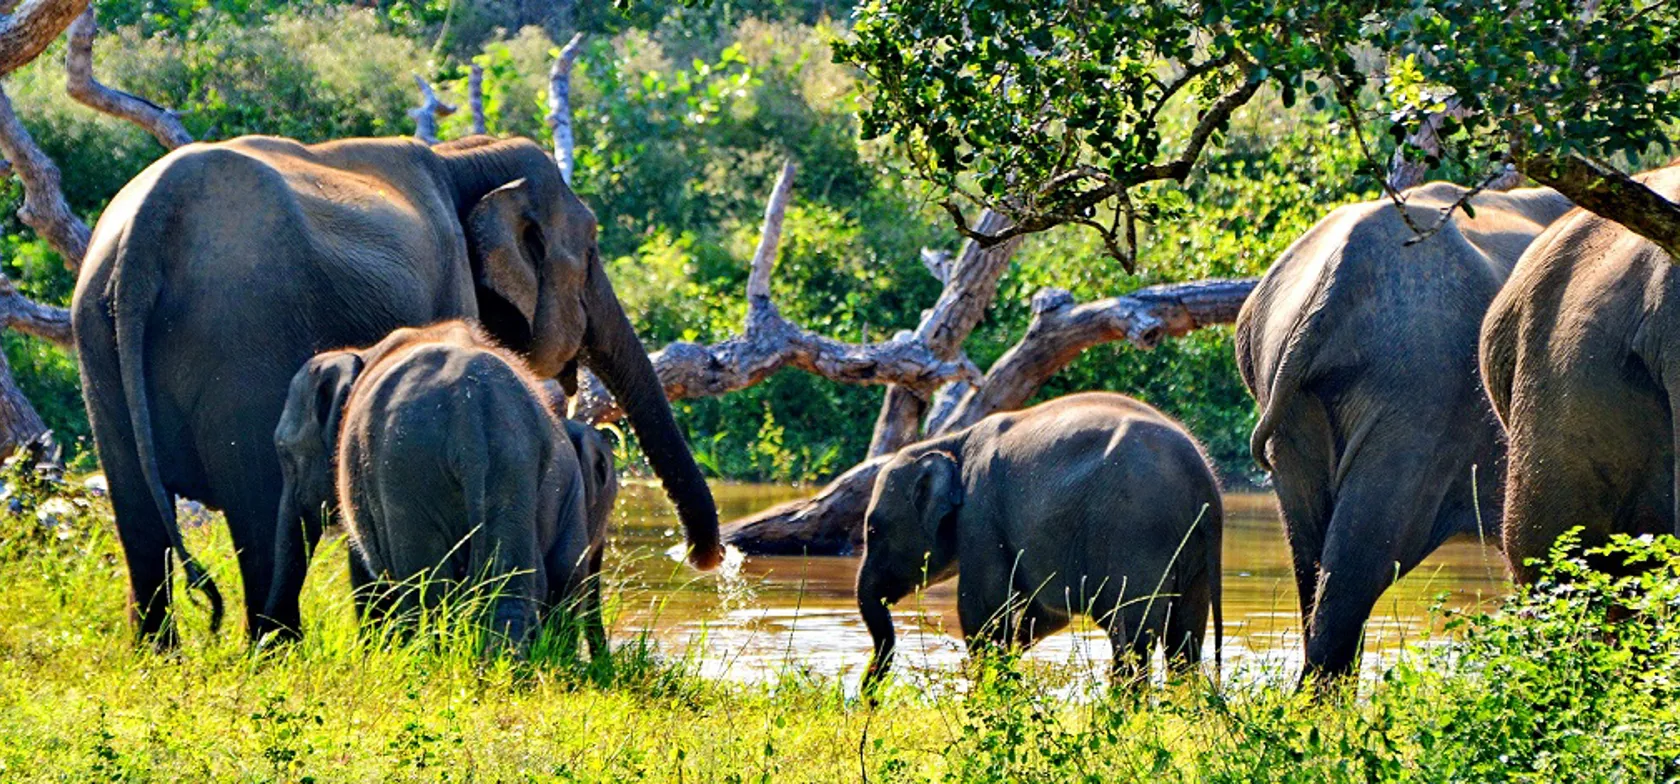 Sri Lanka har et rigt dyreliv, hvor der blandt andet lever mere end 6000 vilde elefanter i Sri Lanka. Foto Claus Christensen